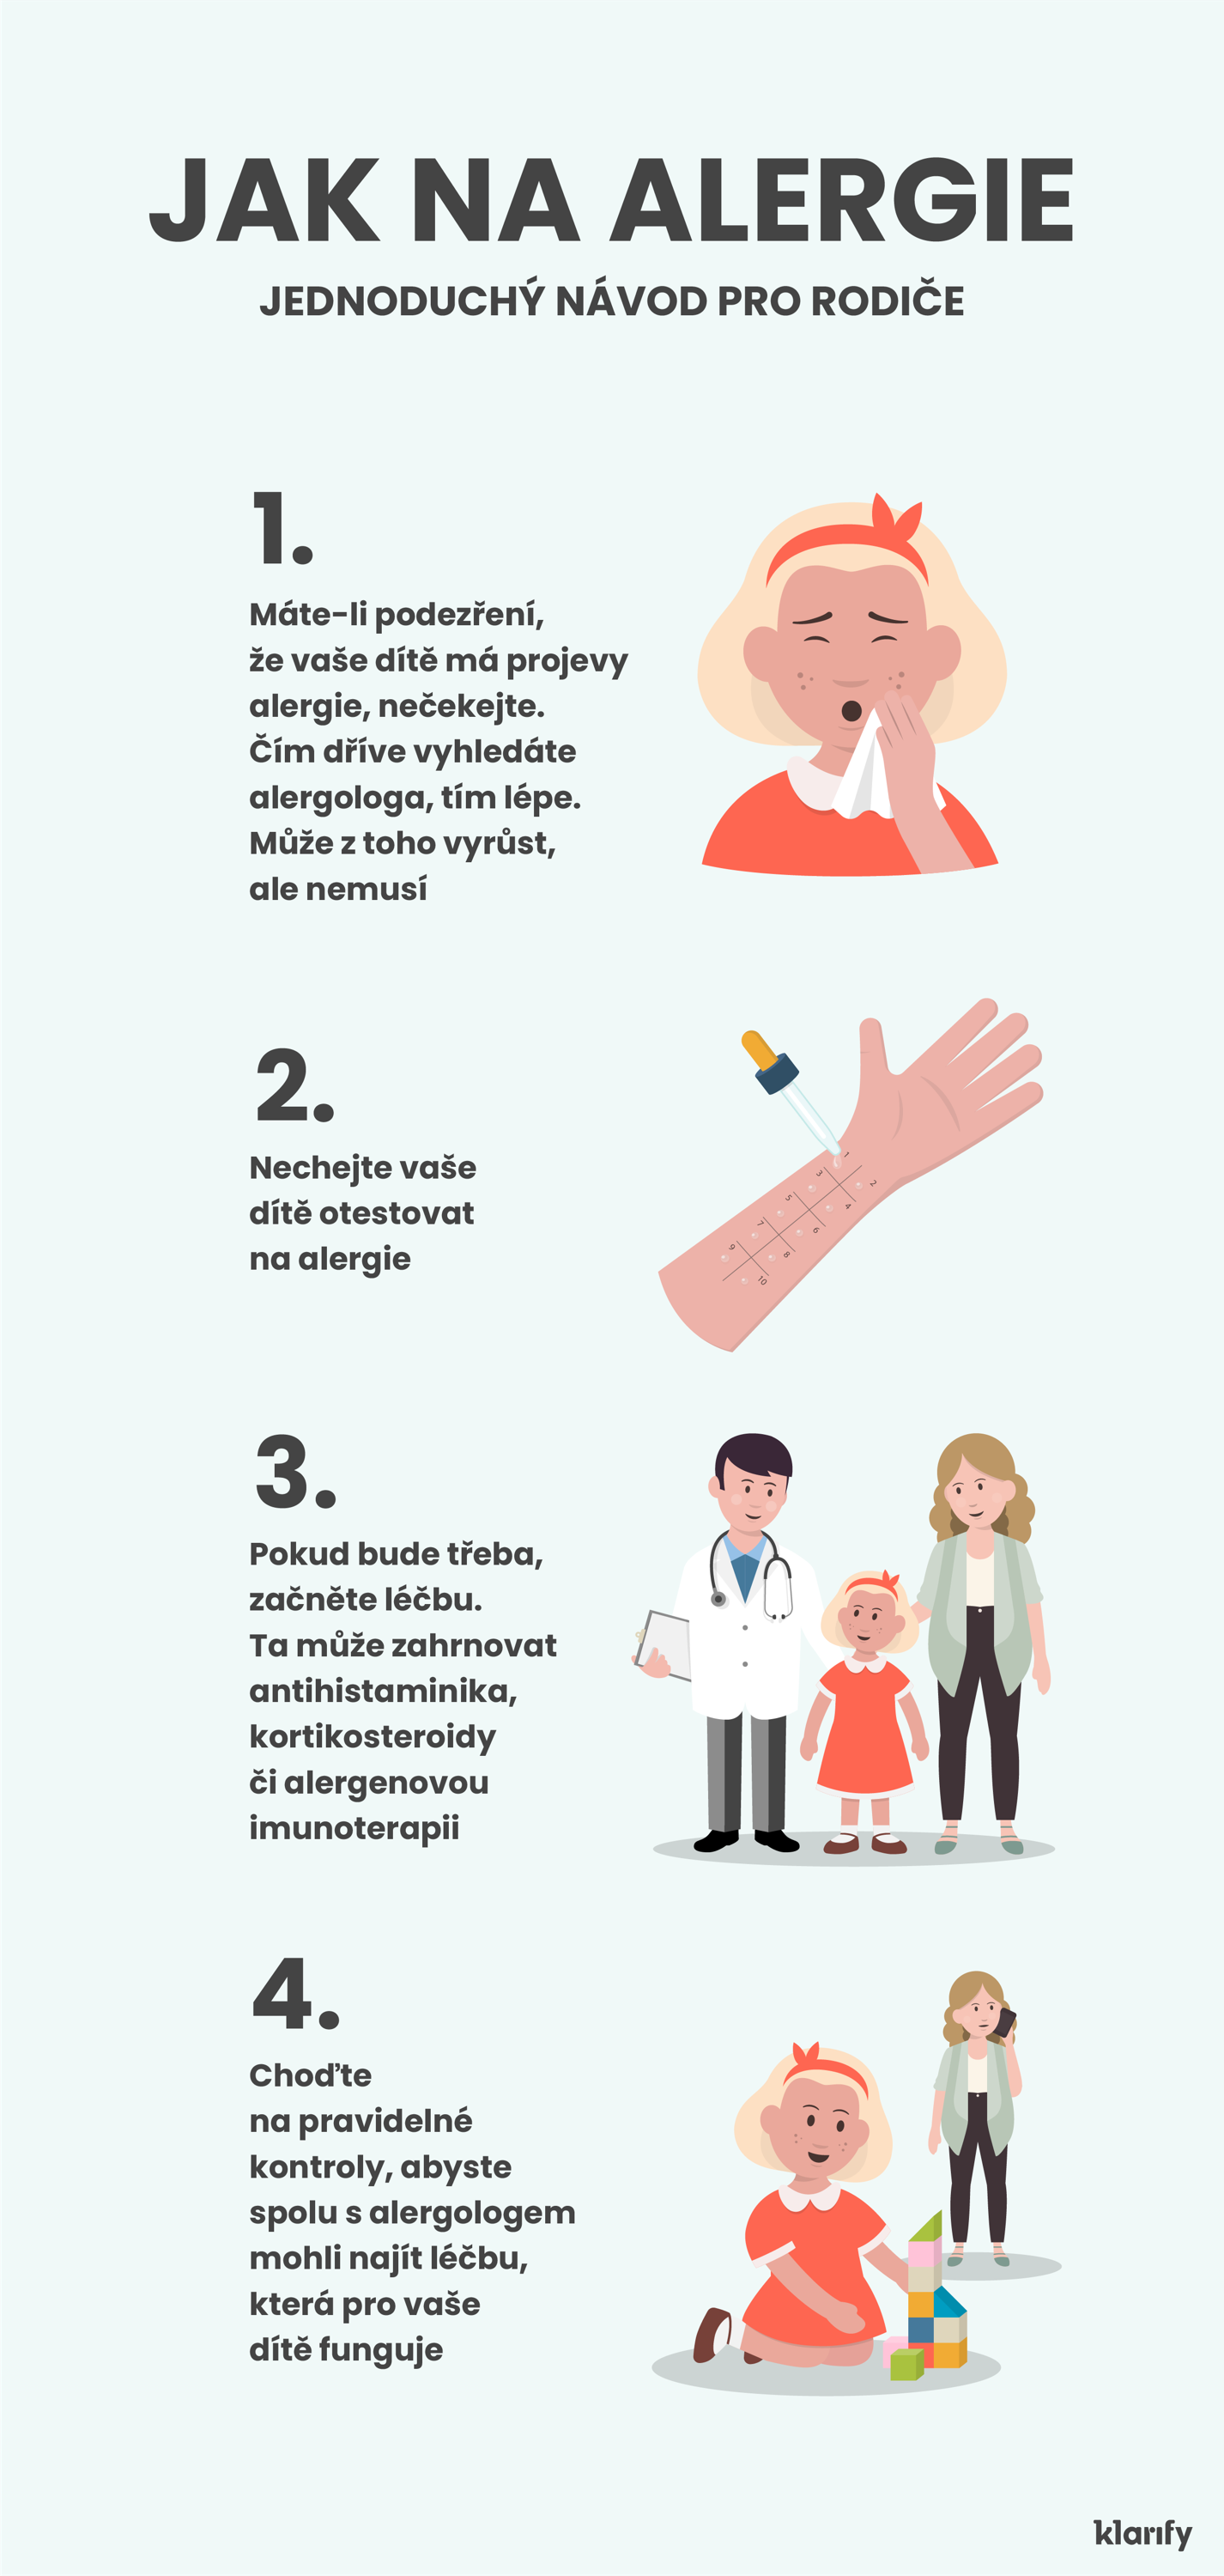  Jak na alergie – jednoduchý návod pro rodiče. Na obrázku jsou 4 kroky od rozpoznání příznaků u vašeho dítěte až po spolupráci s vaším lékařem při hledání nejlepší možné léčby.